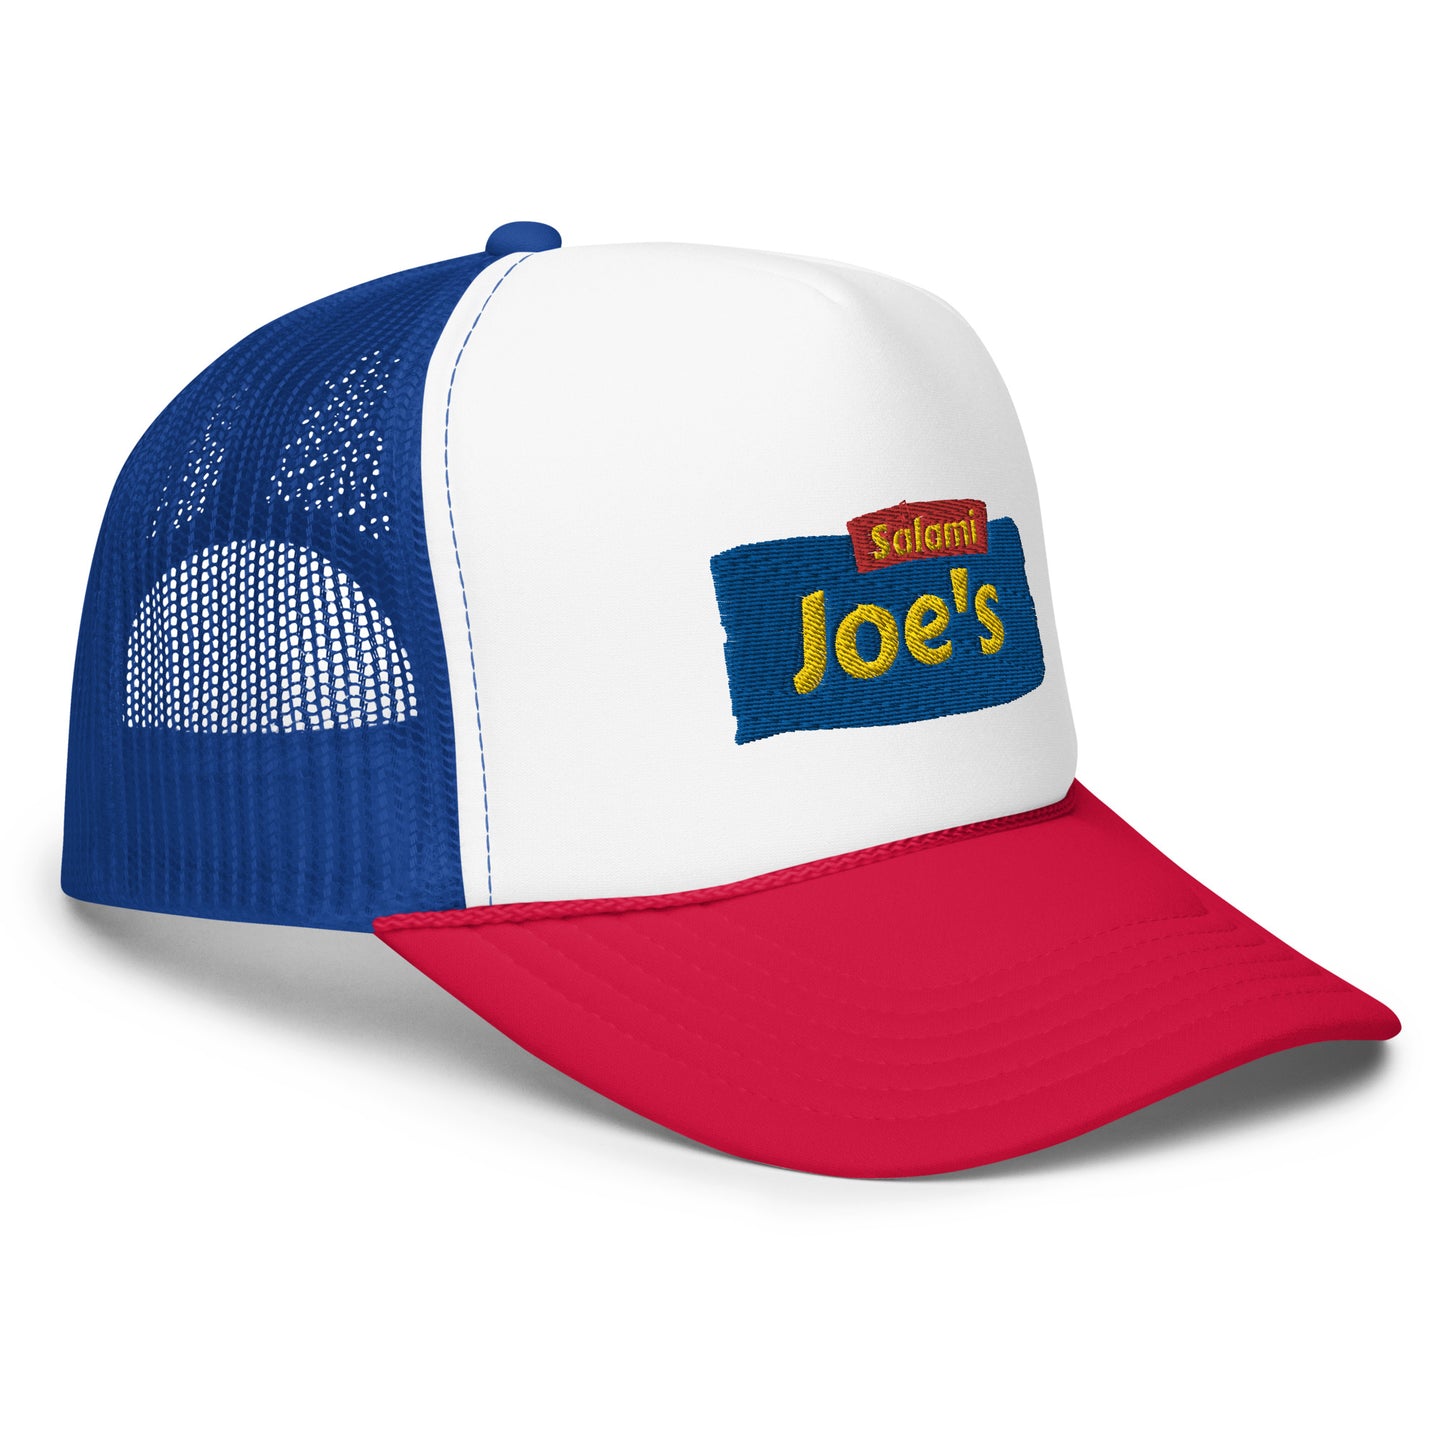 Salami Joe's Foam Trucker Hat